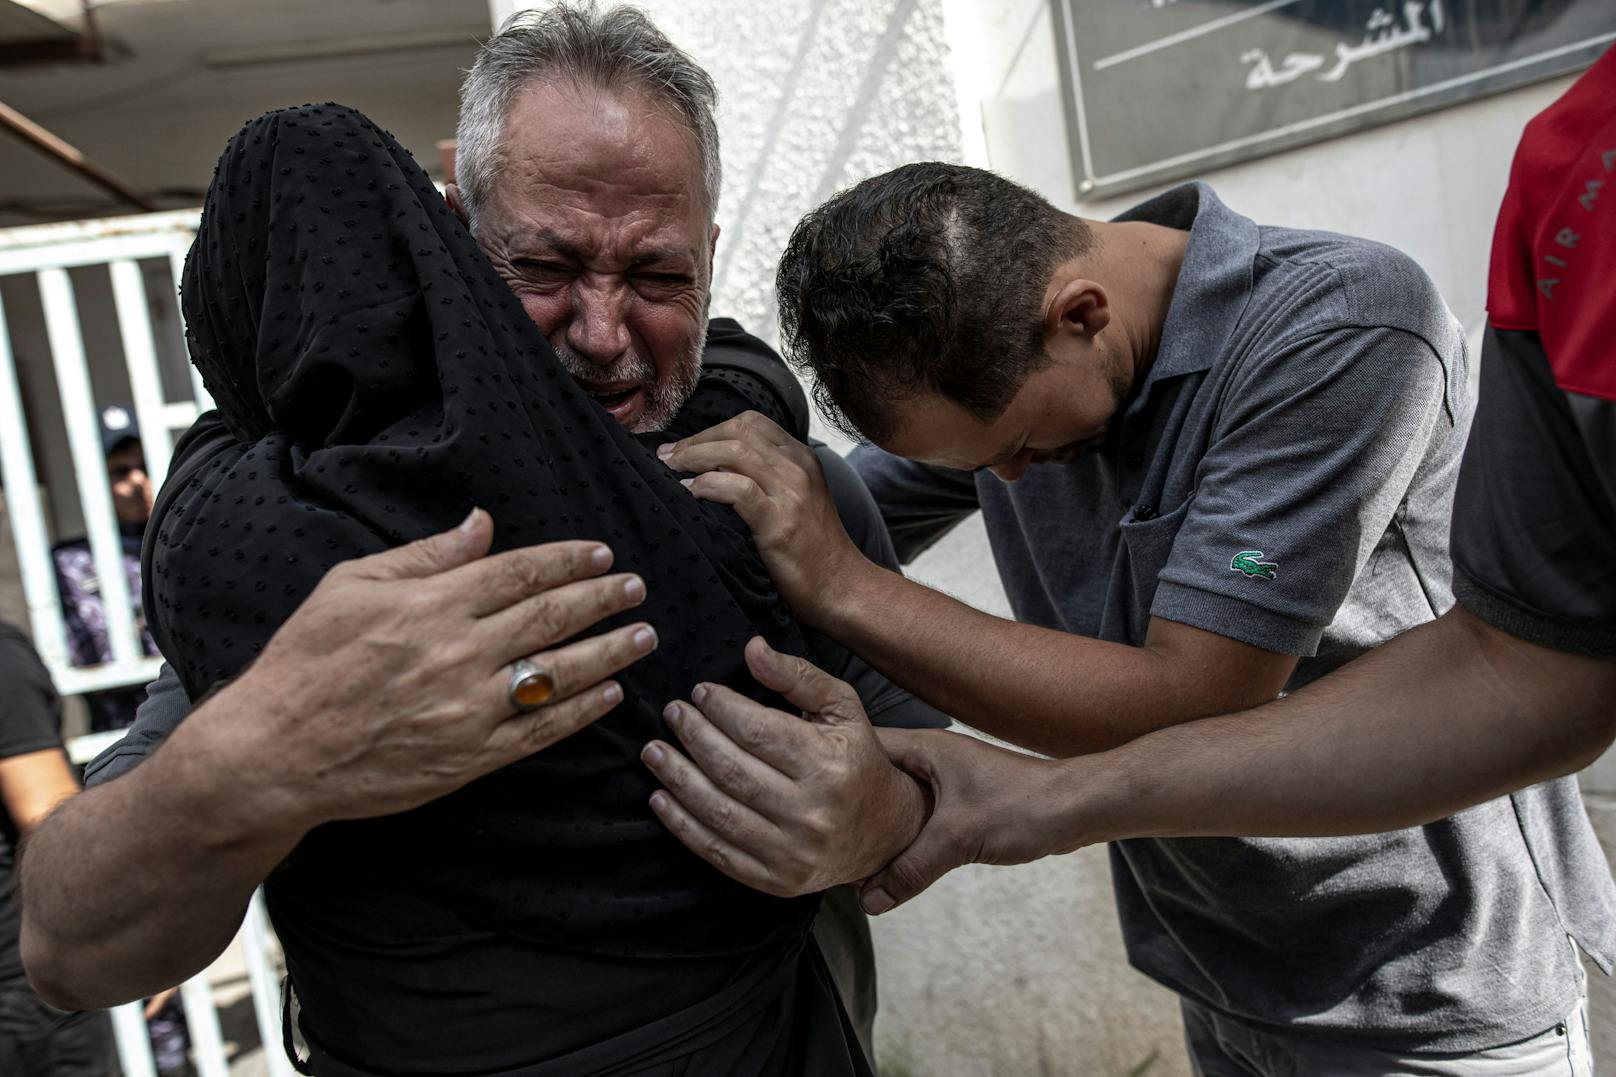 Seit Freitag starben nach Angaben des palästinensischen Gesundheitsministeriums 29 Menschen. Mindestens 253 seien verletzt worden.